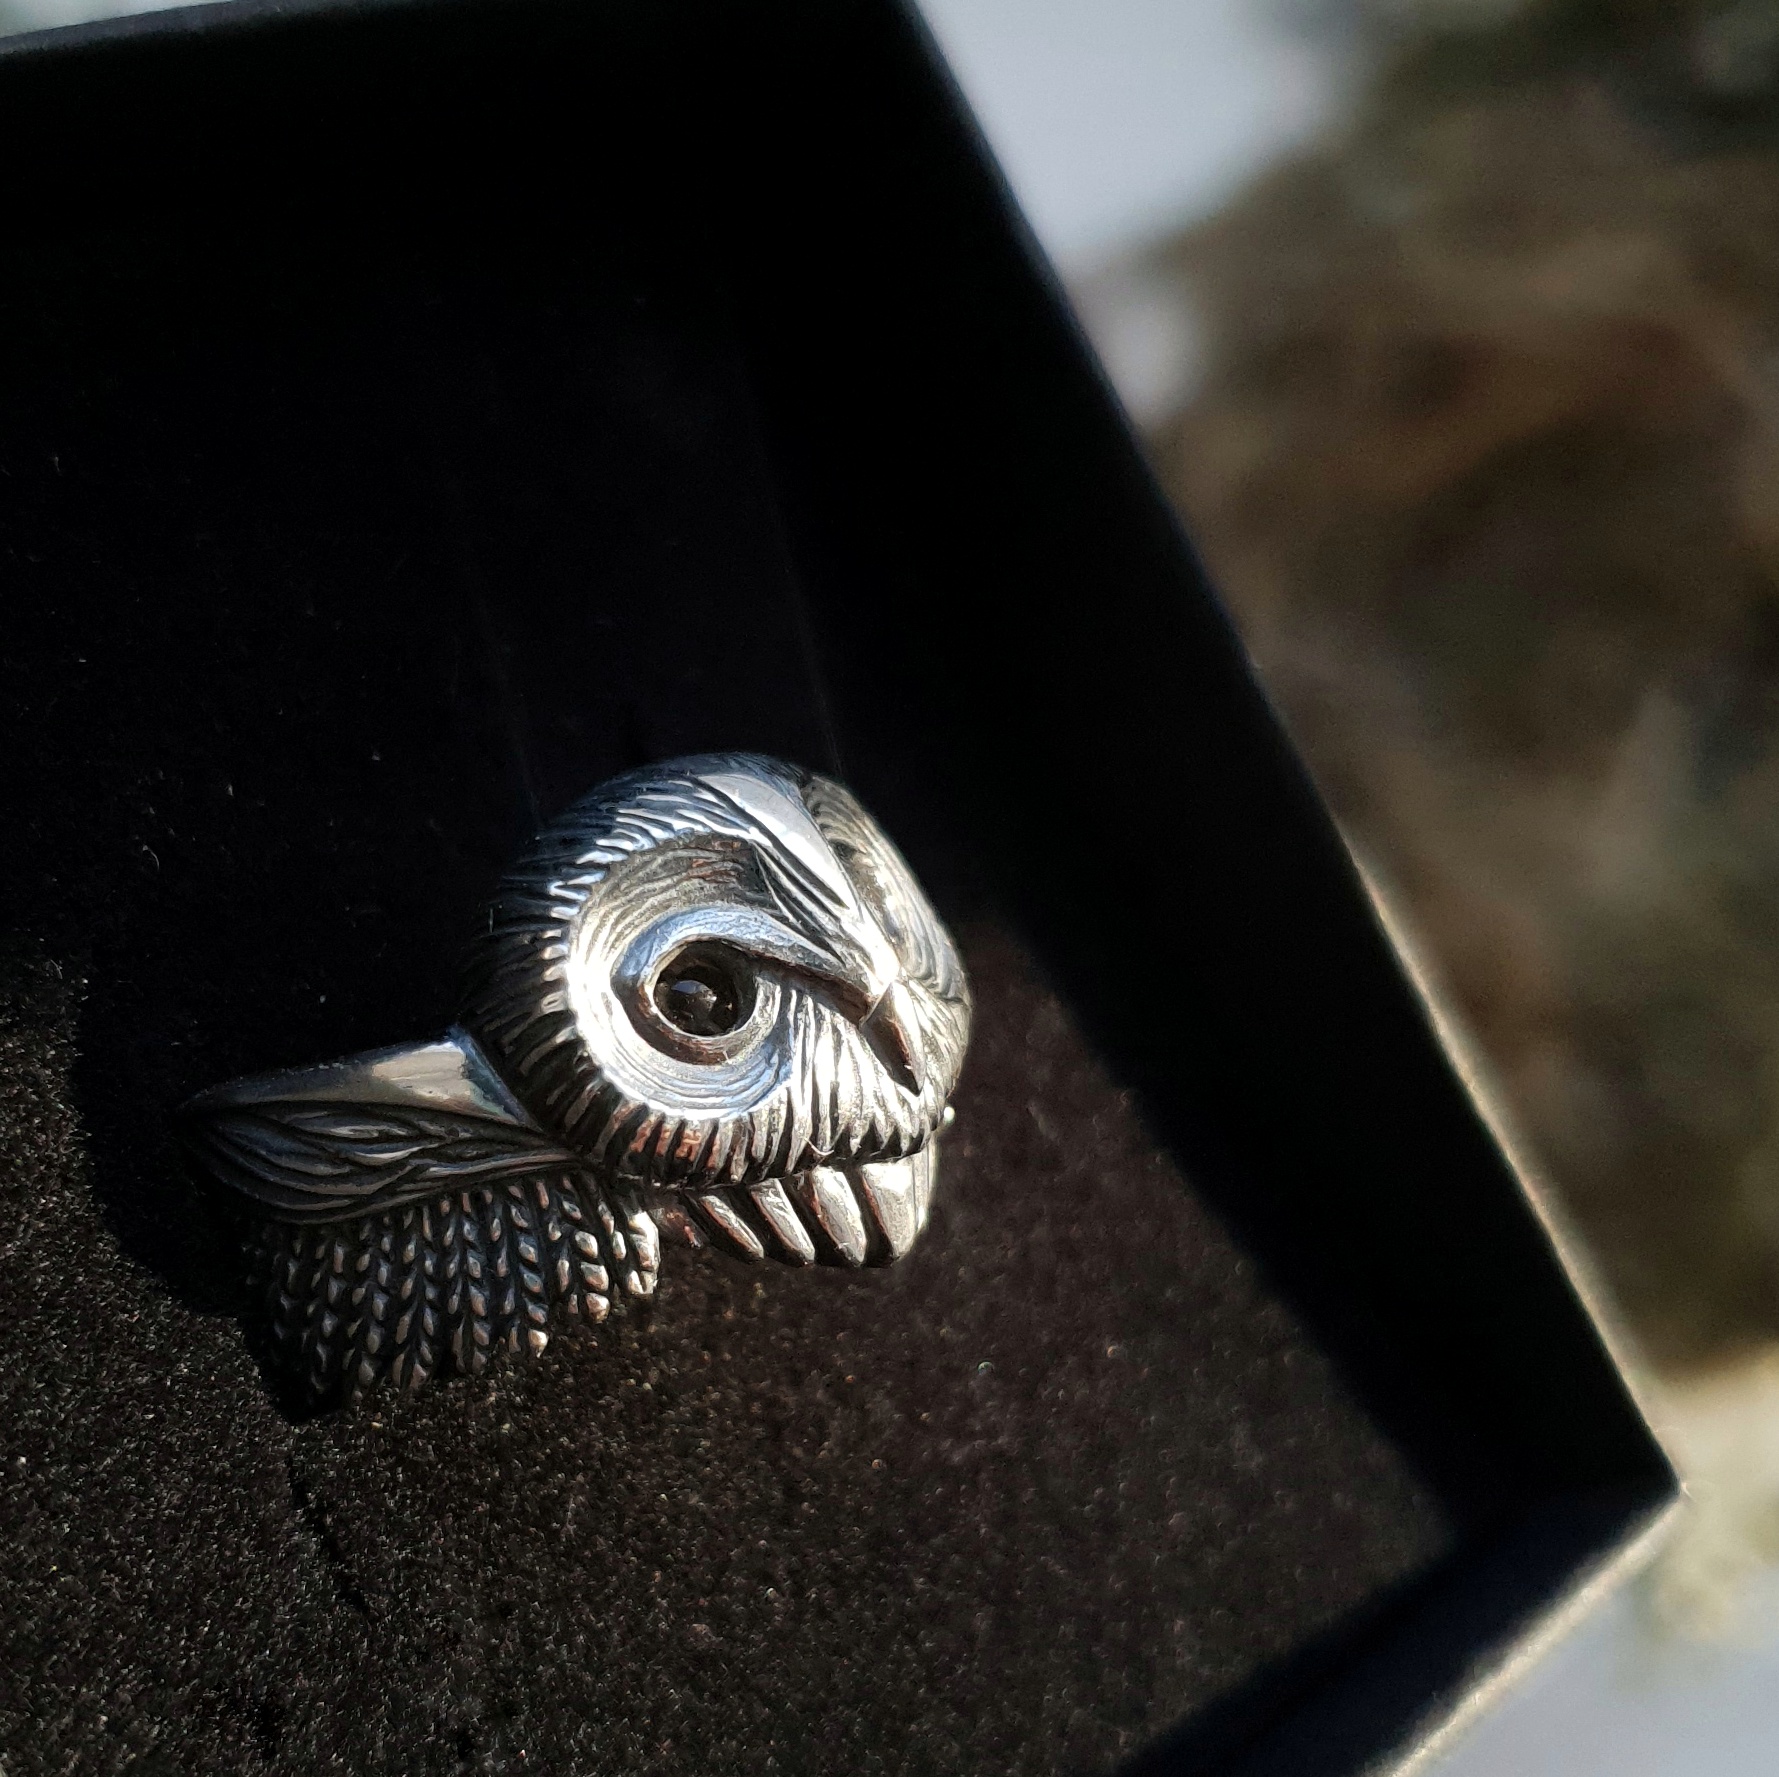 Oxidised Silver Owl Ring with Orange Eyes Finger Ring - University Trendz